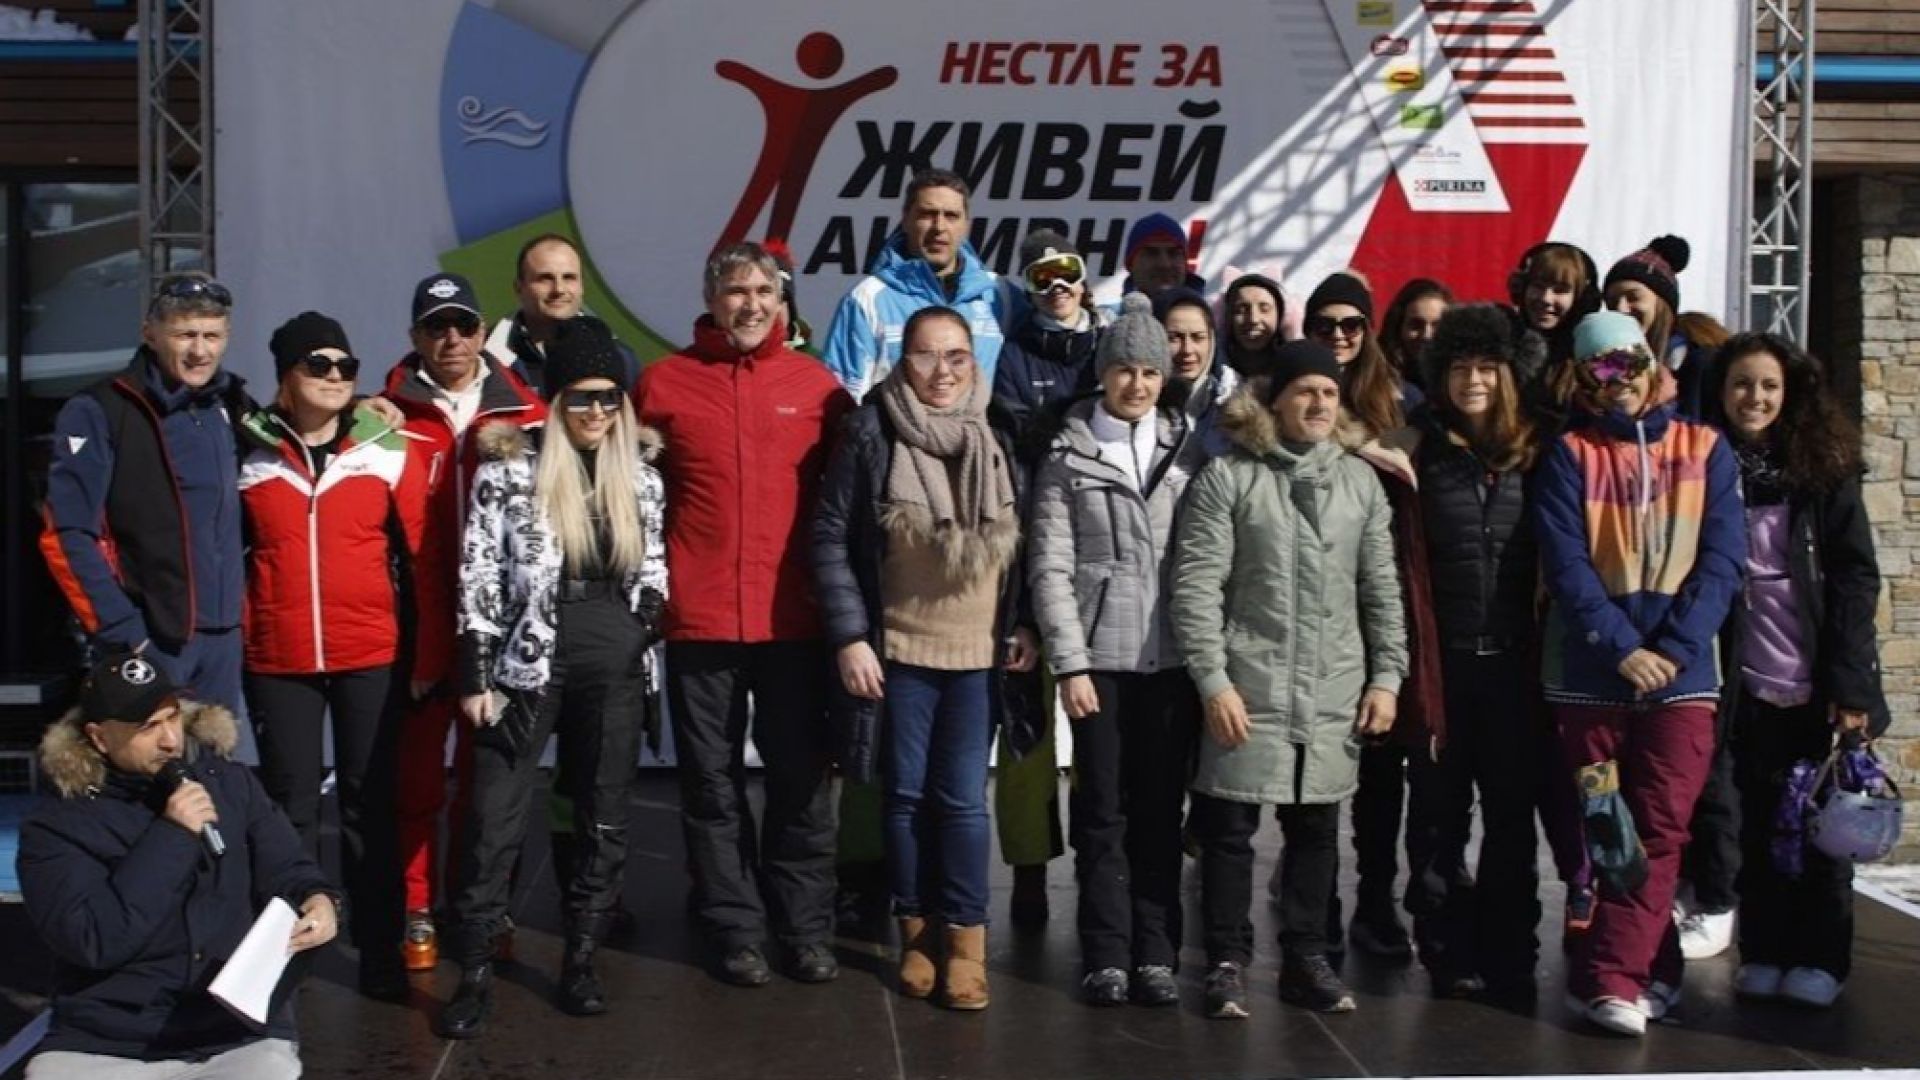 Първото зимно Нестле за Живей Активно! събра стотици участници и посланици на зимните активности в слънчев ден на Боровец